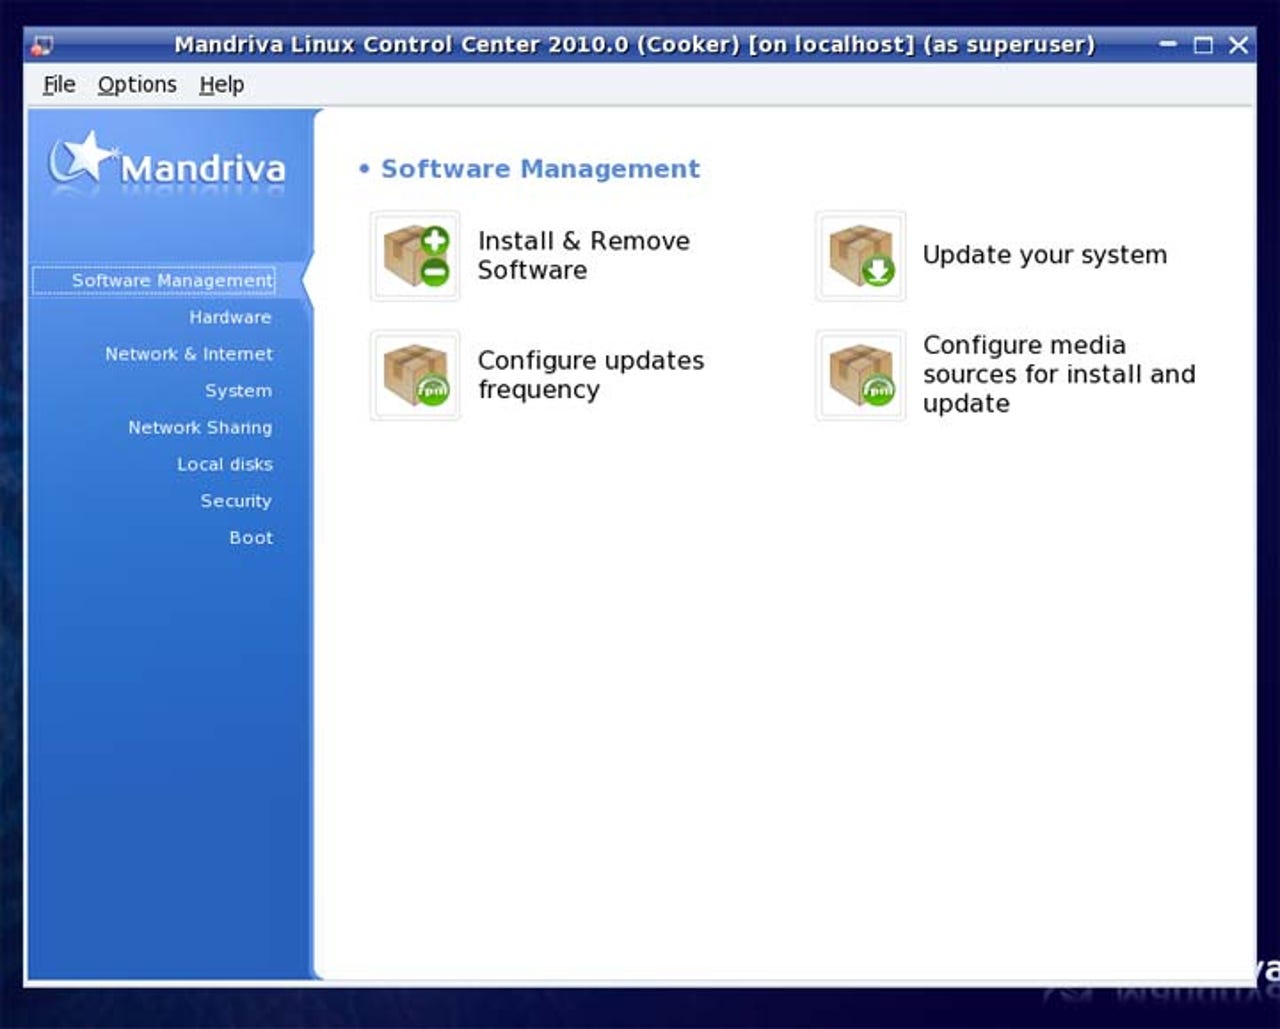 mandriva-2010-beta-screenshots25.jpg